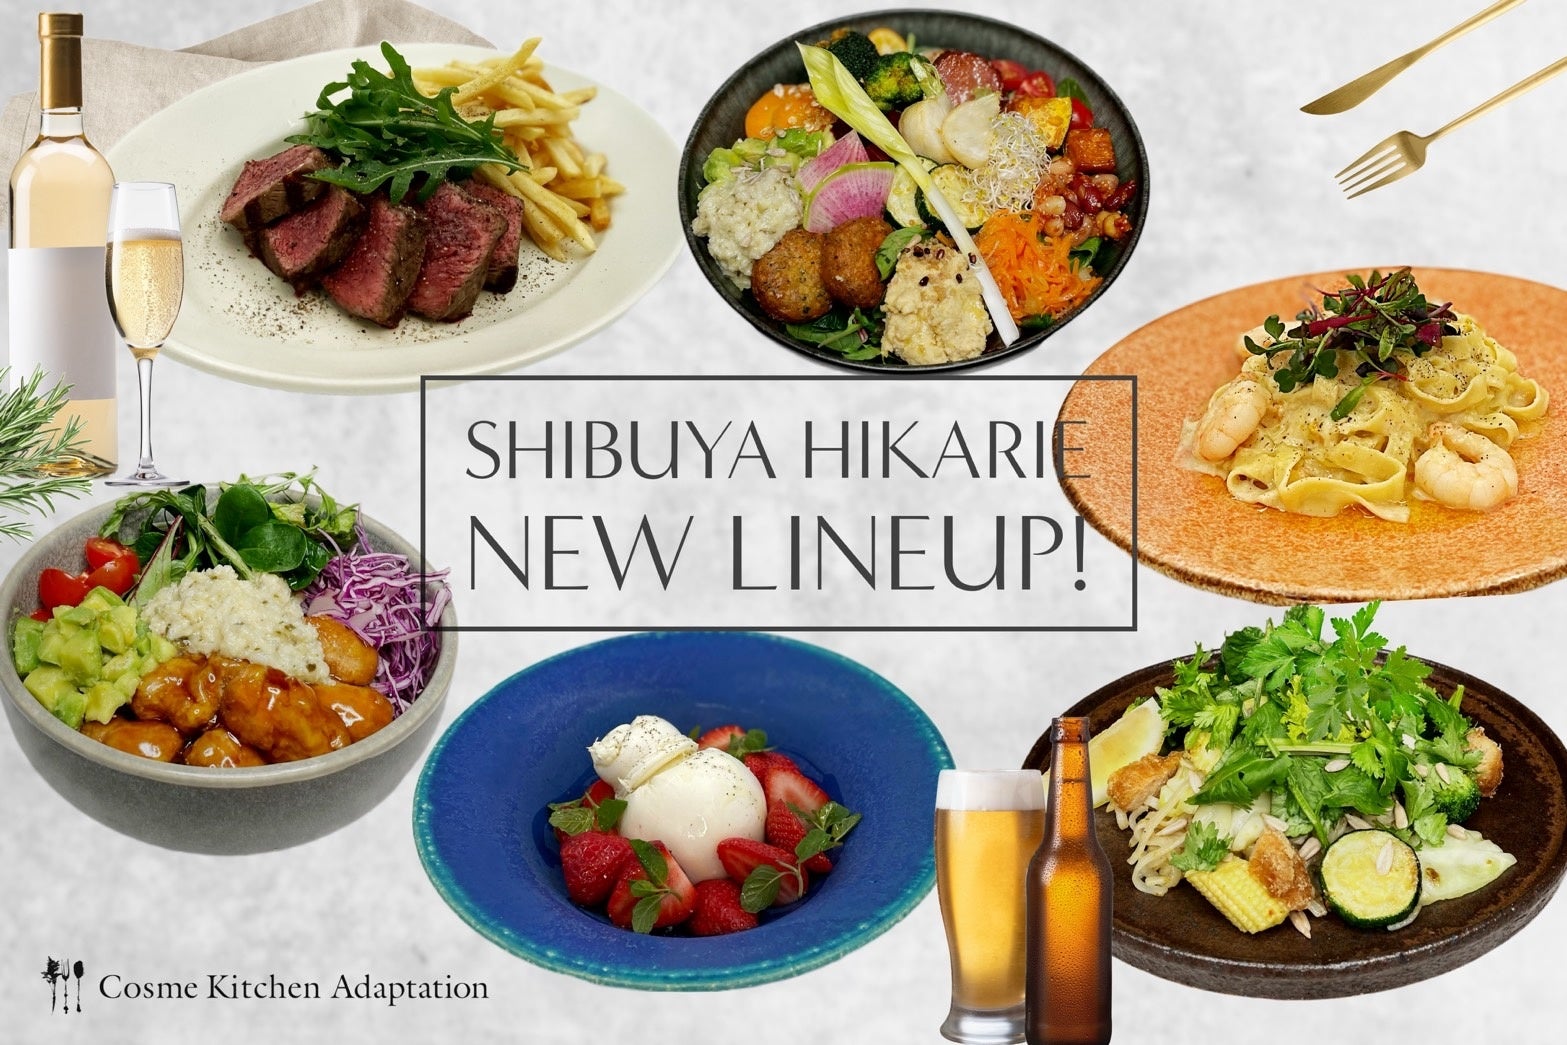 「食のダイバーシティ」を深化！Cosme Kitchen Adaptation渋谷ヒカリエ店 は専門性はそのままに、多様な街渋谷らしくもっとだれもが選べるメニューへ